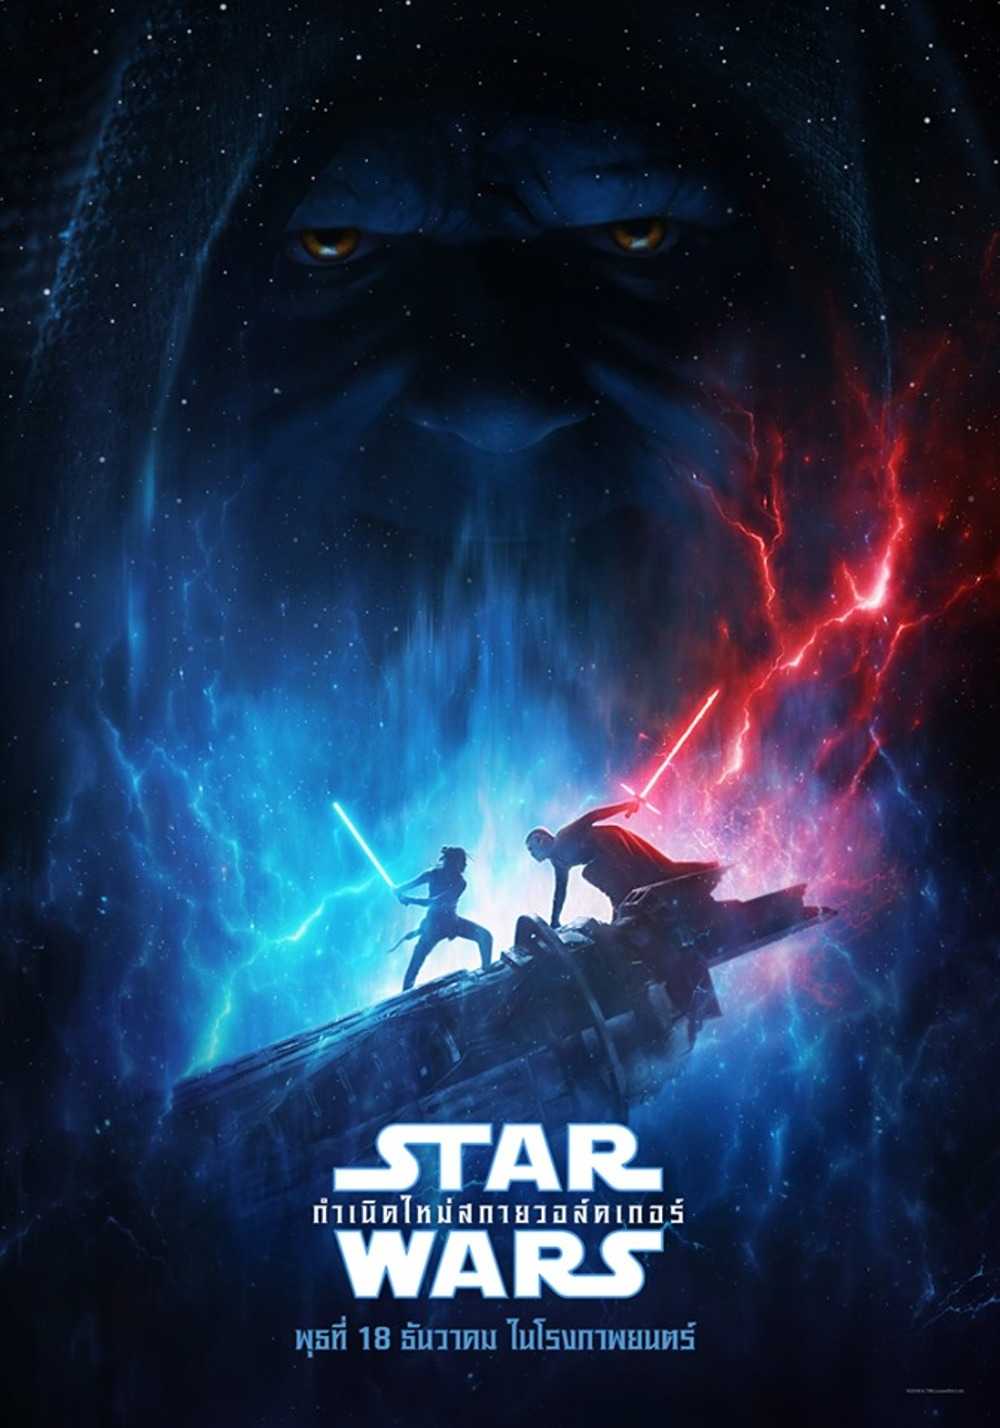 ดูหนังออนไลน์ Star Wars 9 The Rise of Skywalker (2019) สตาร์ วอร์ส